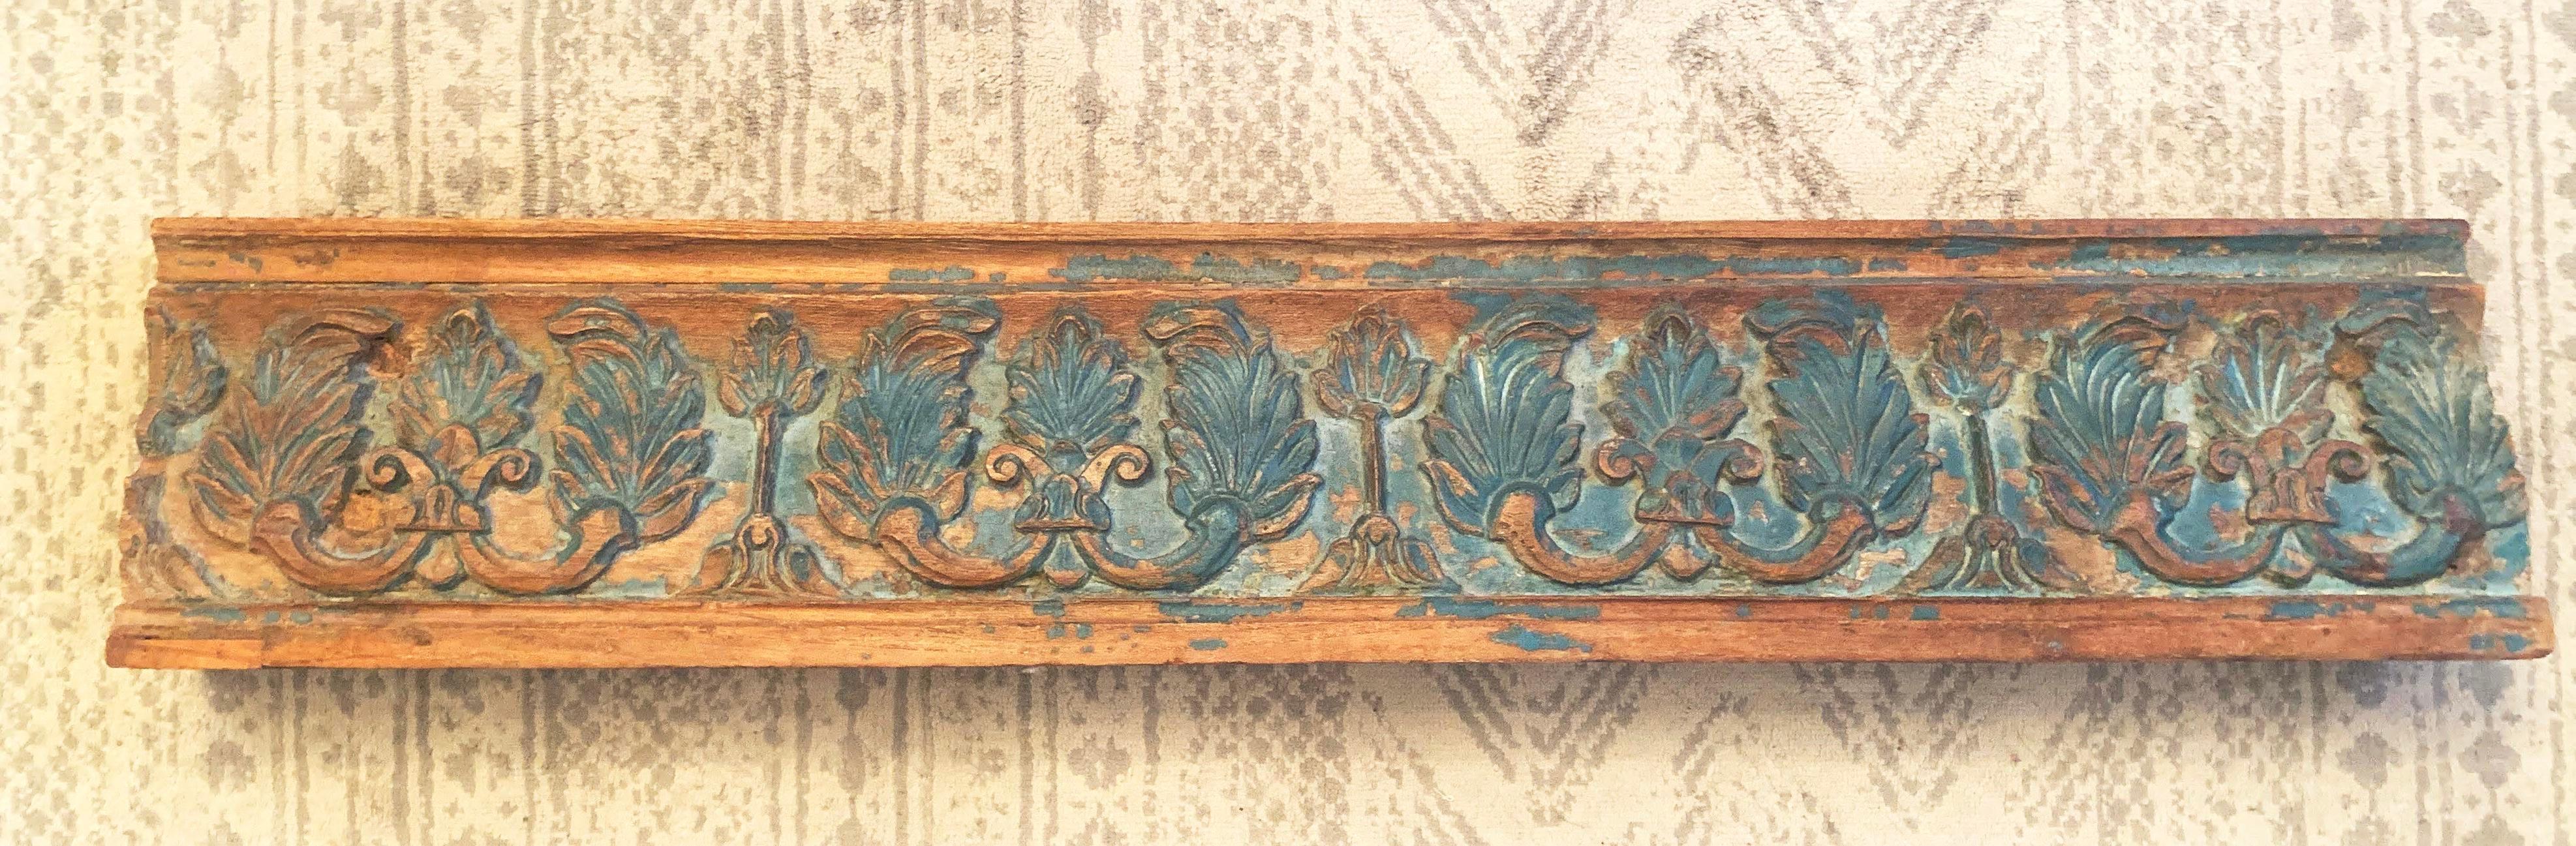 Antike indische Palisanderholz-Türbalkenschnitzerei mit grüner Notlackierung, um 1900. Hergestellt aus massivem Palisanderholz. Die dicke grüne Farbe ist an vielen Stellen verblasst und abgeplatzt und gibt den Blick auf die Schnitzereien und das